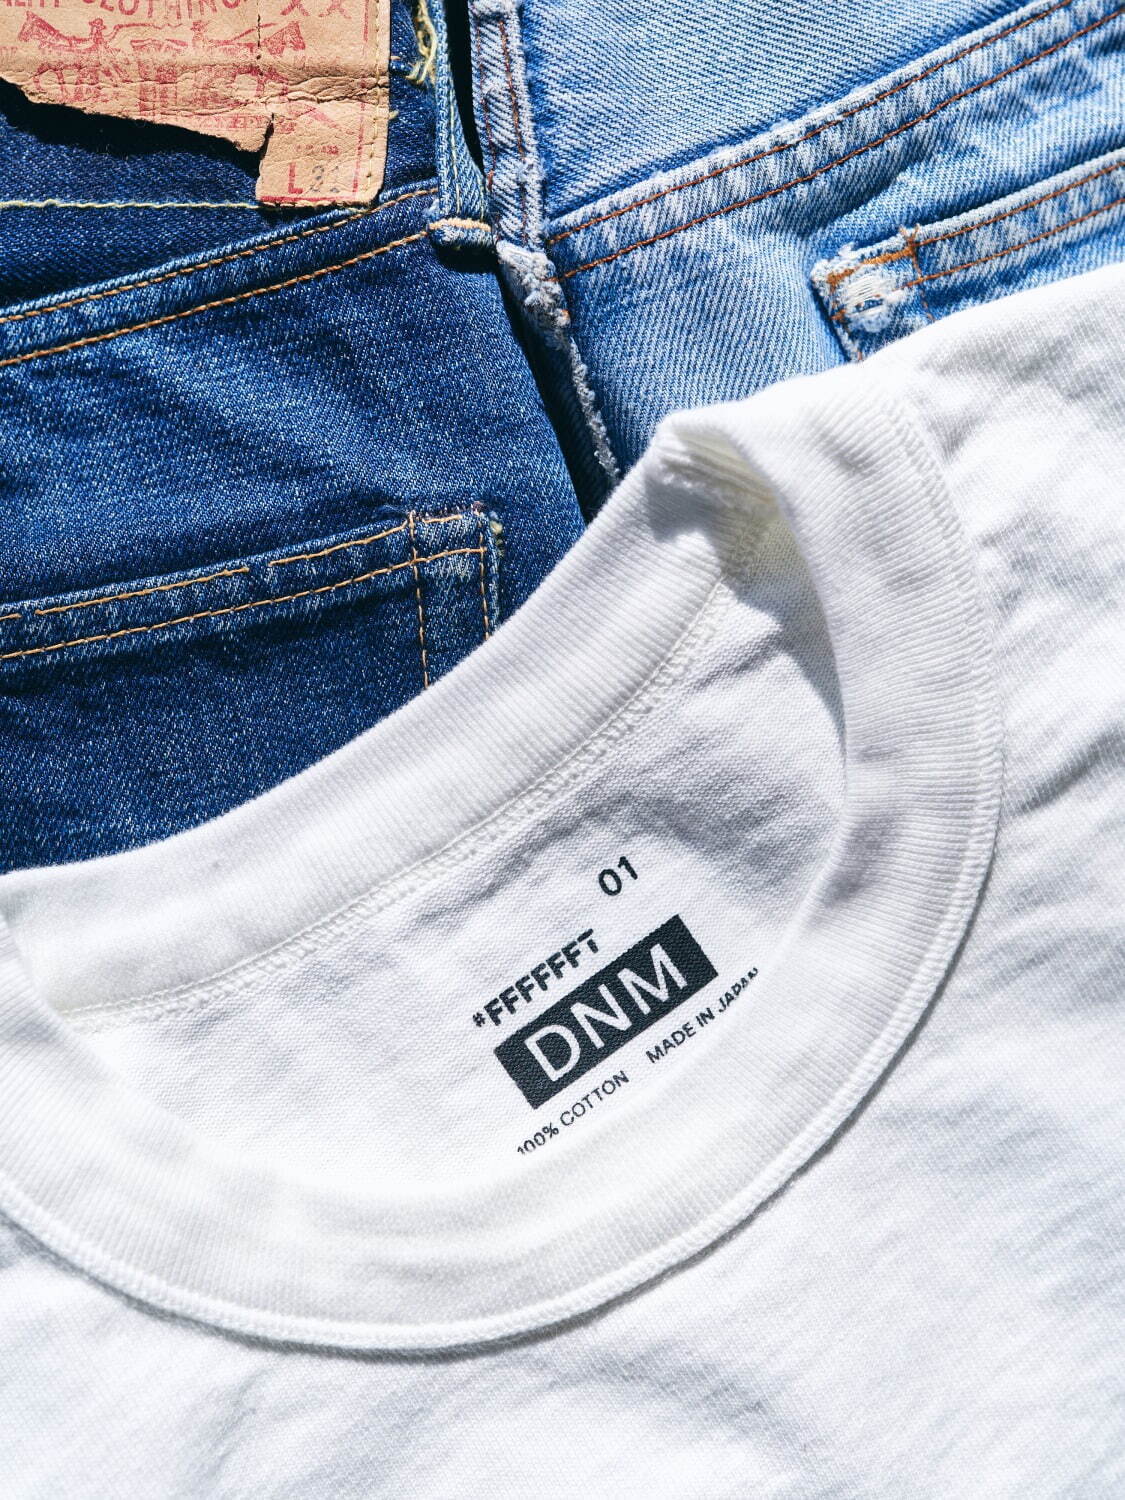 白Tシャツ専門店「#FFFFFFT」初のオリジナル、デニムに合わせる究極の 